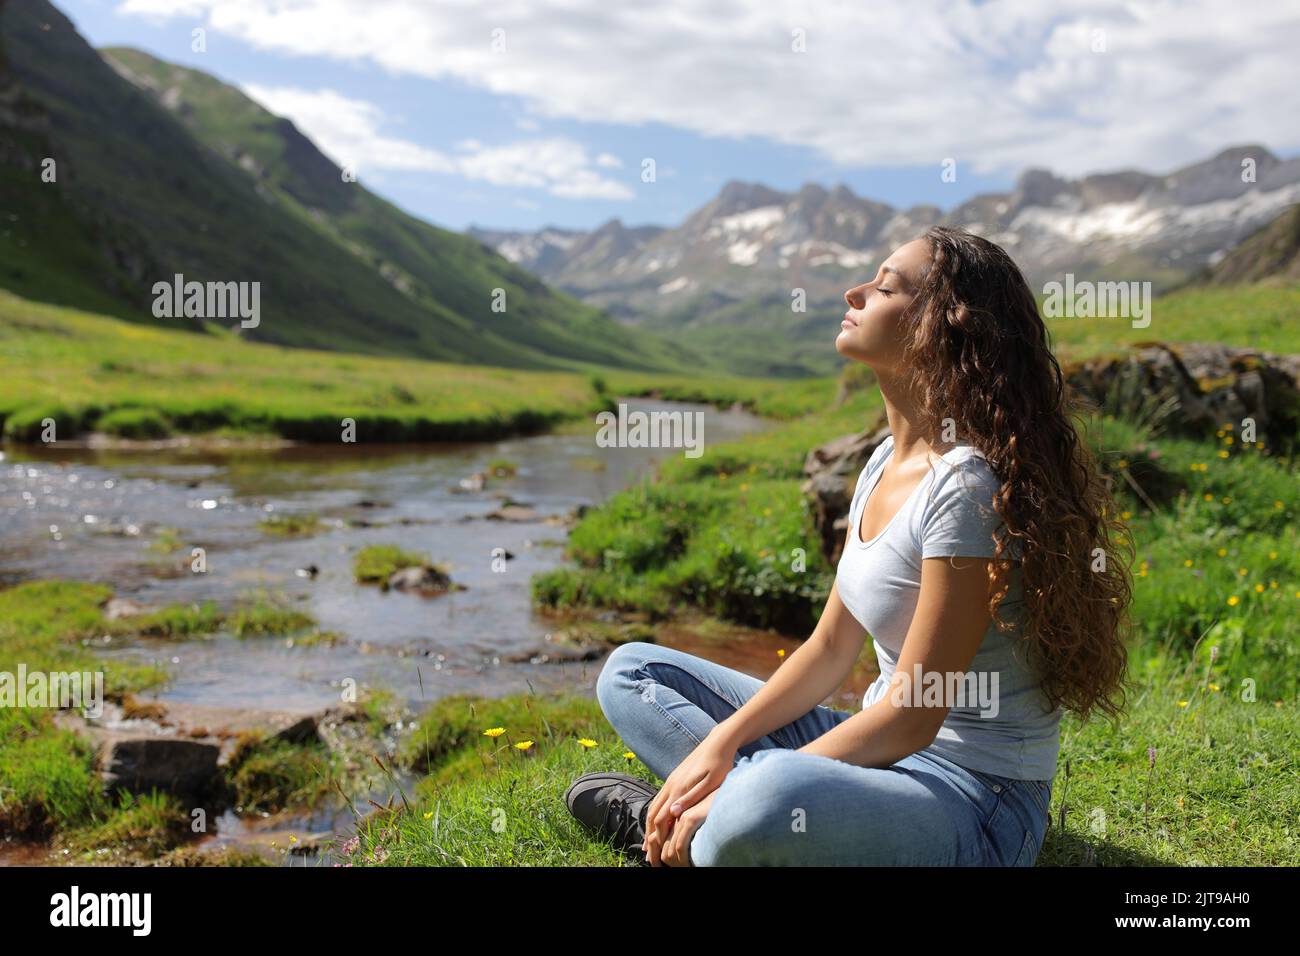 Vista lateral retrato de una mujer casual descansando respirando en un valle de montaña Foto de stock